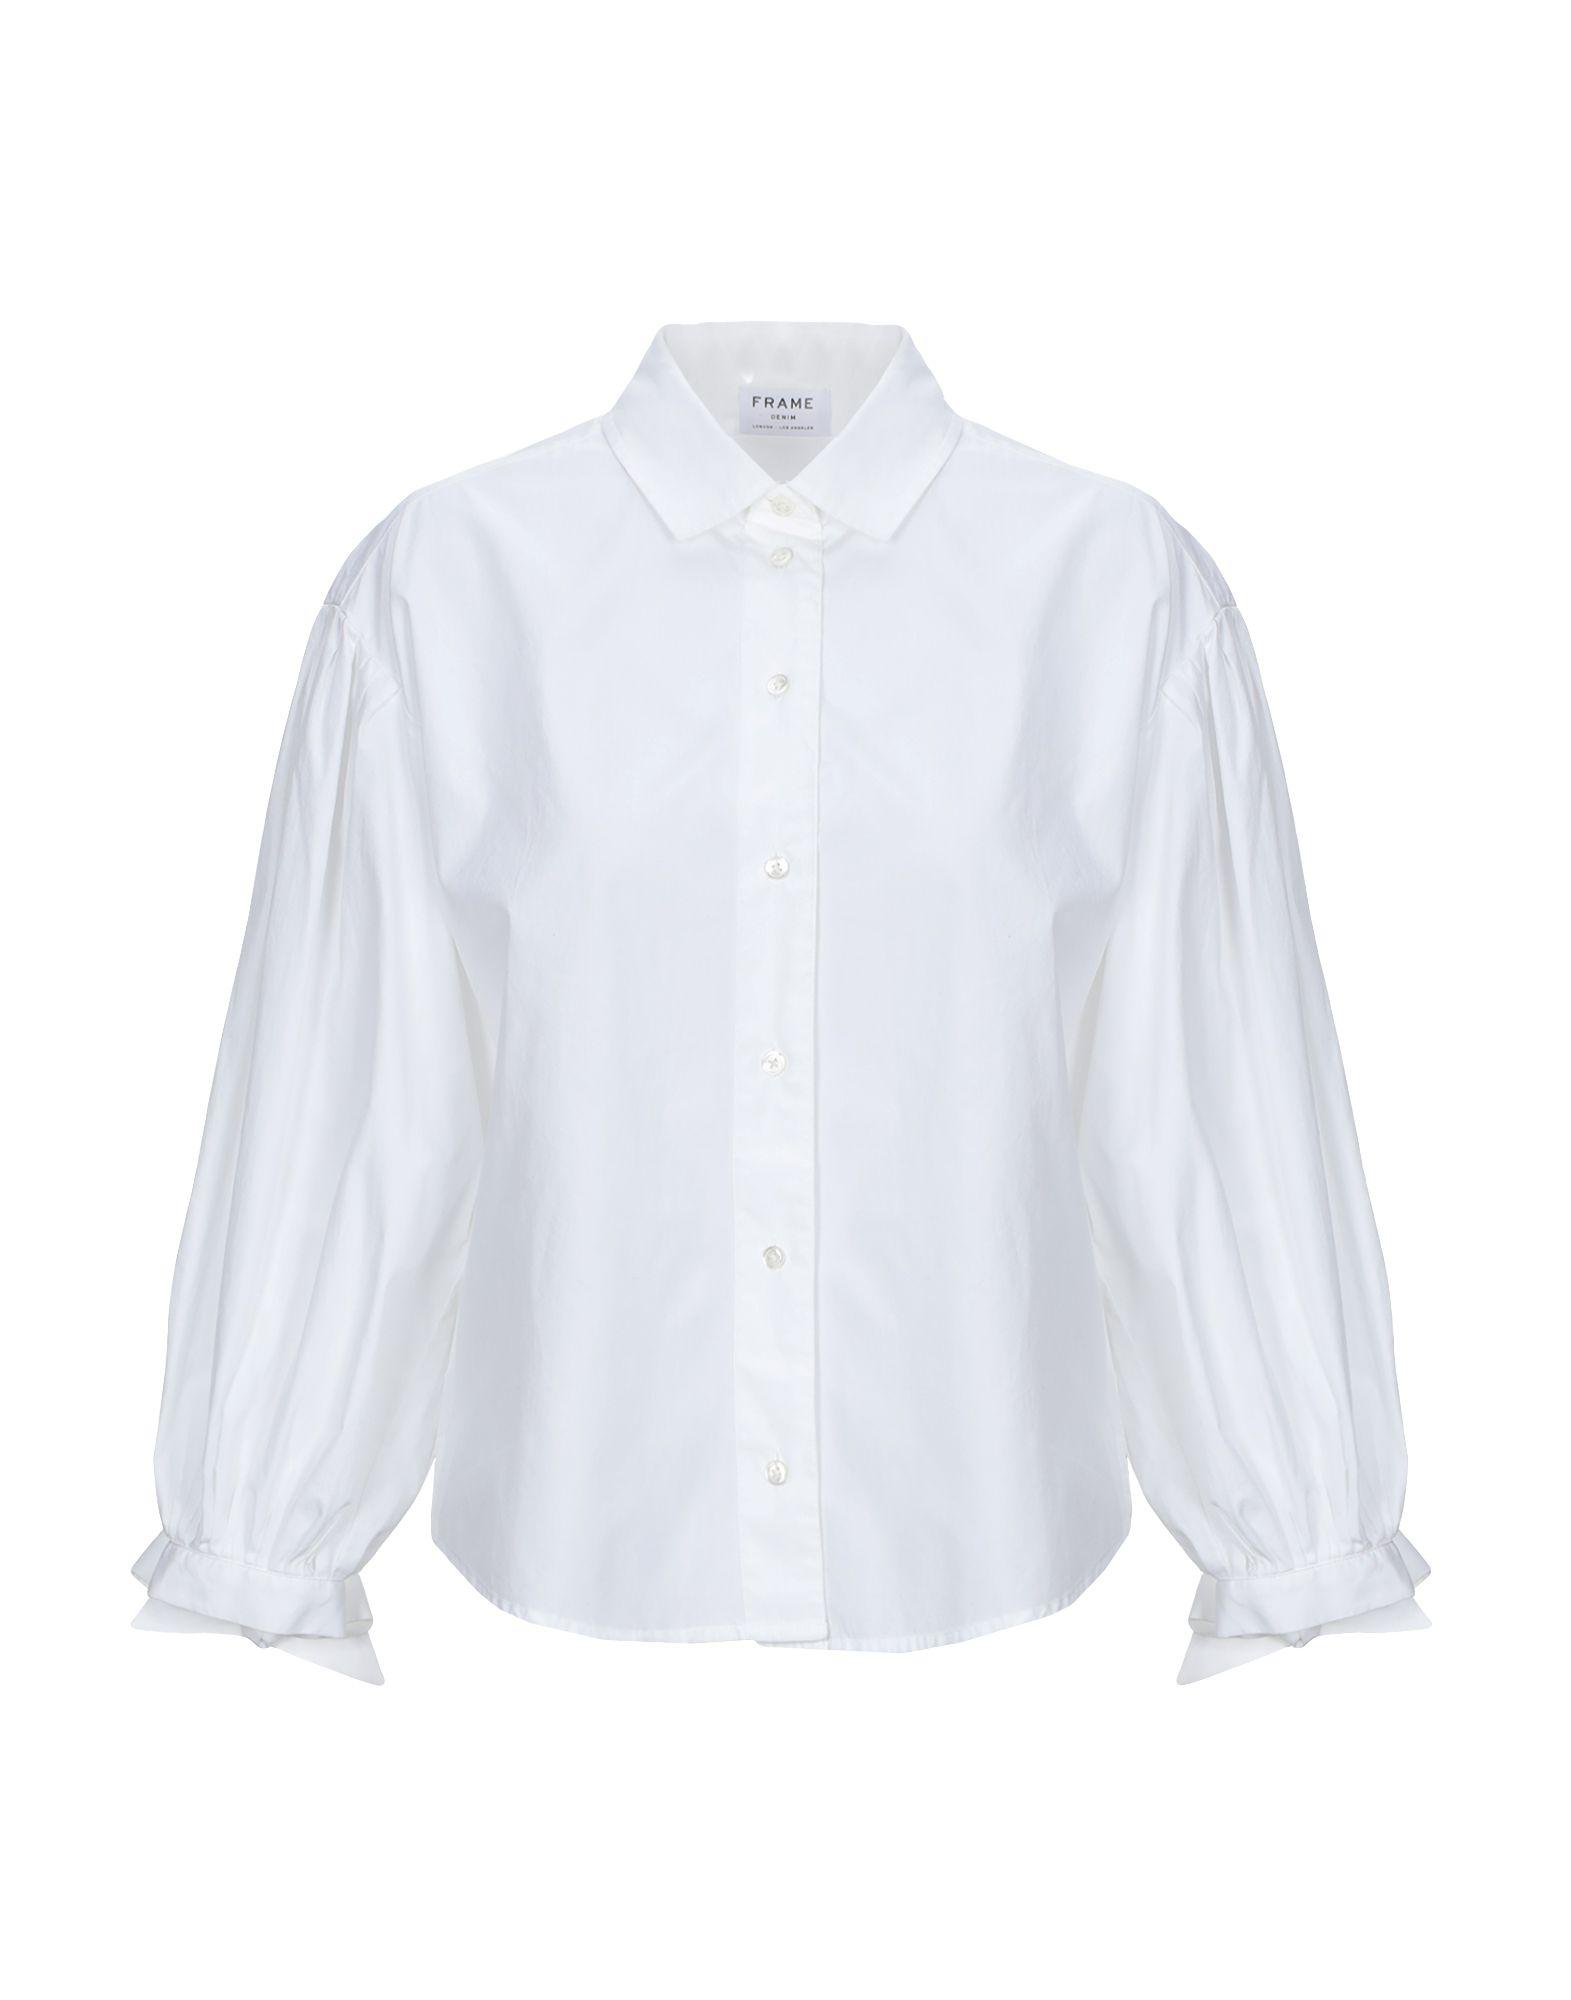 FRAME Shirt in White - Lyst